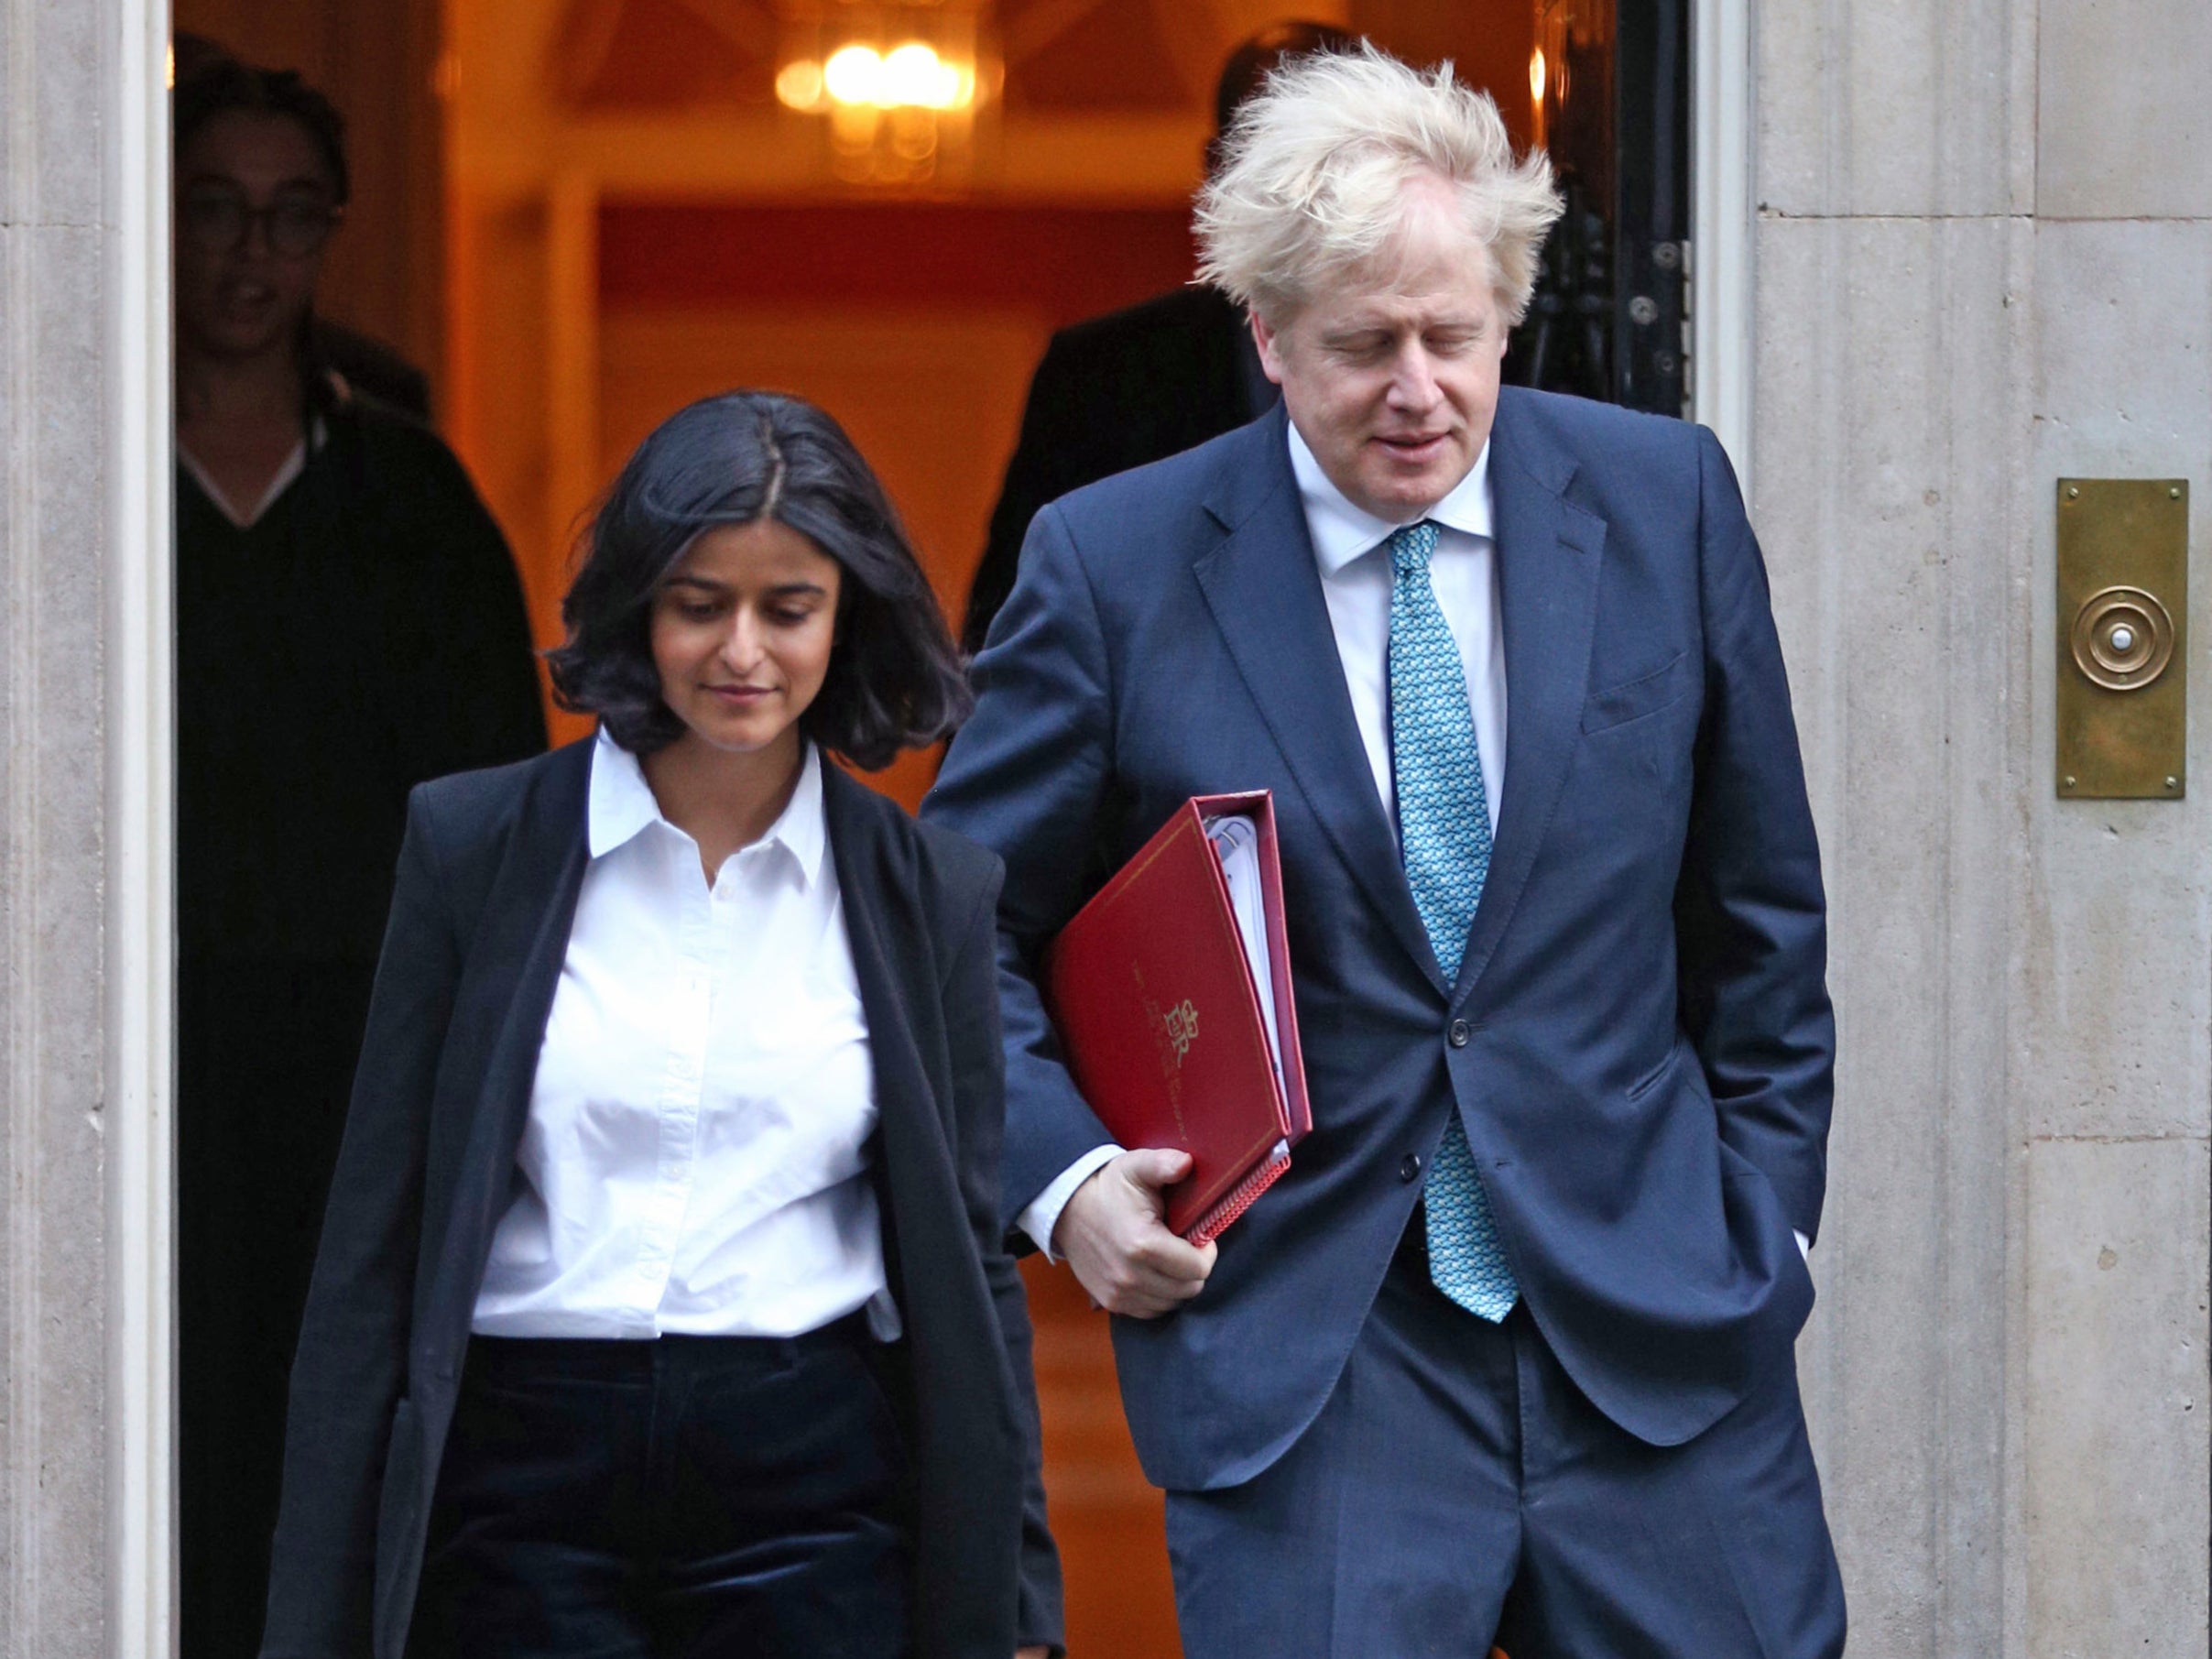 Boris Johnson walking out of Downing Street with Munira Mirza